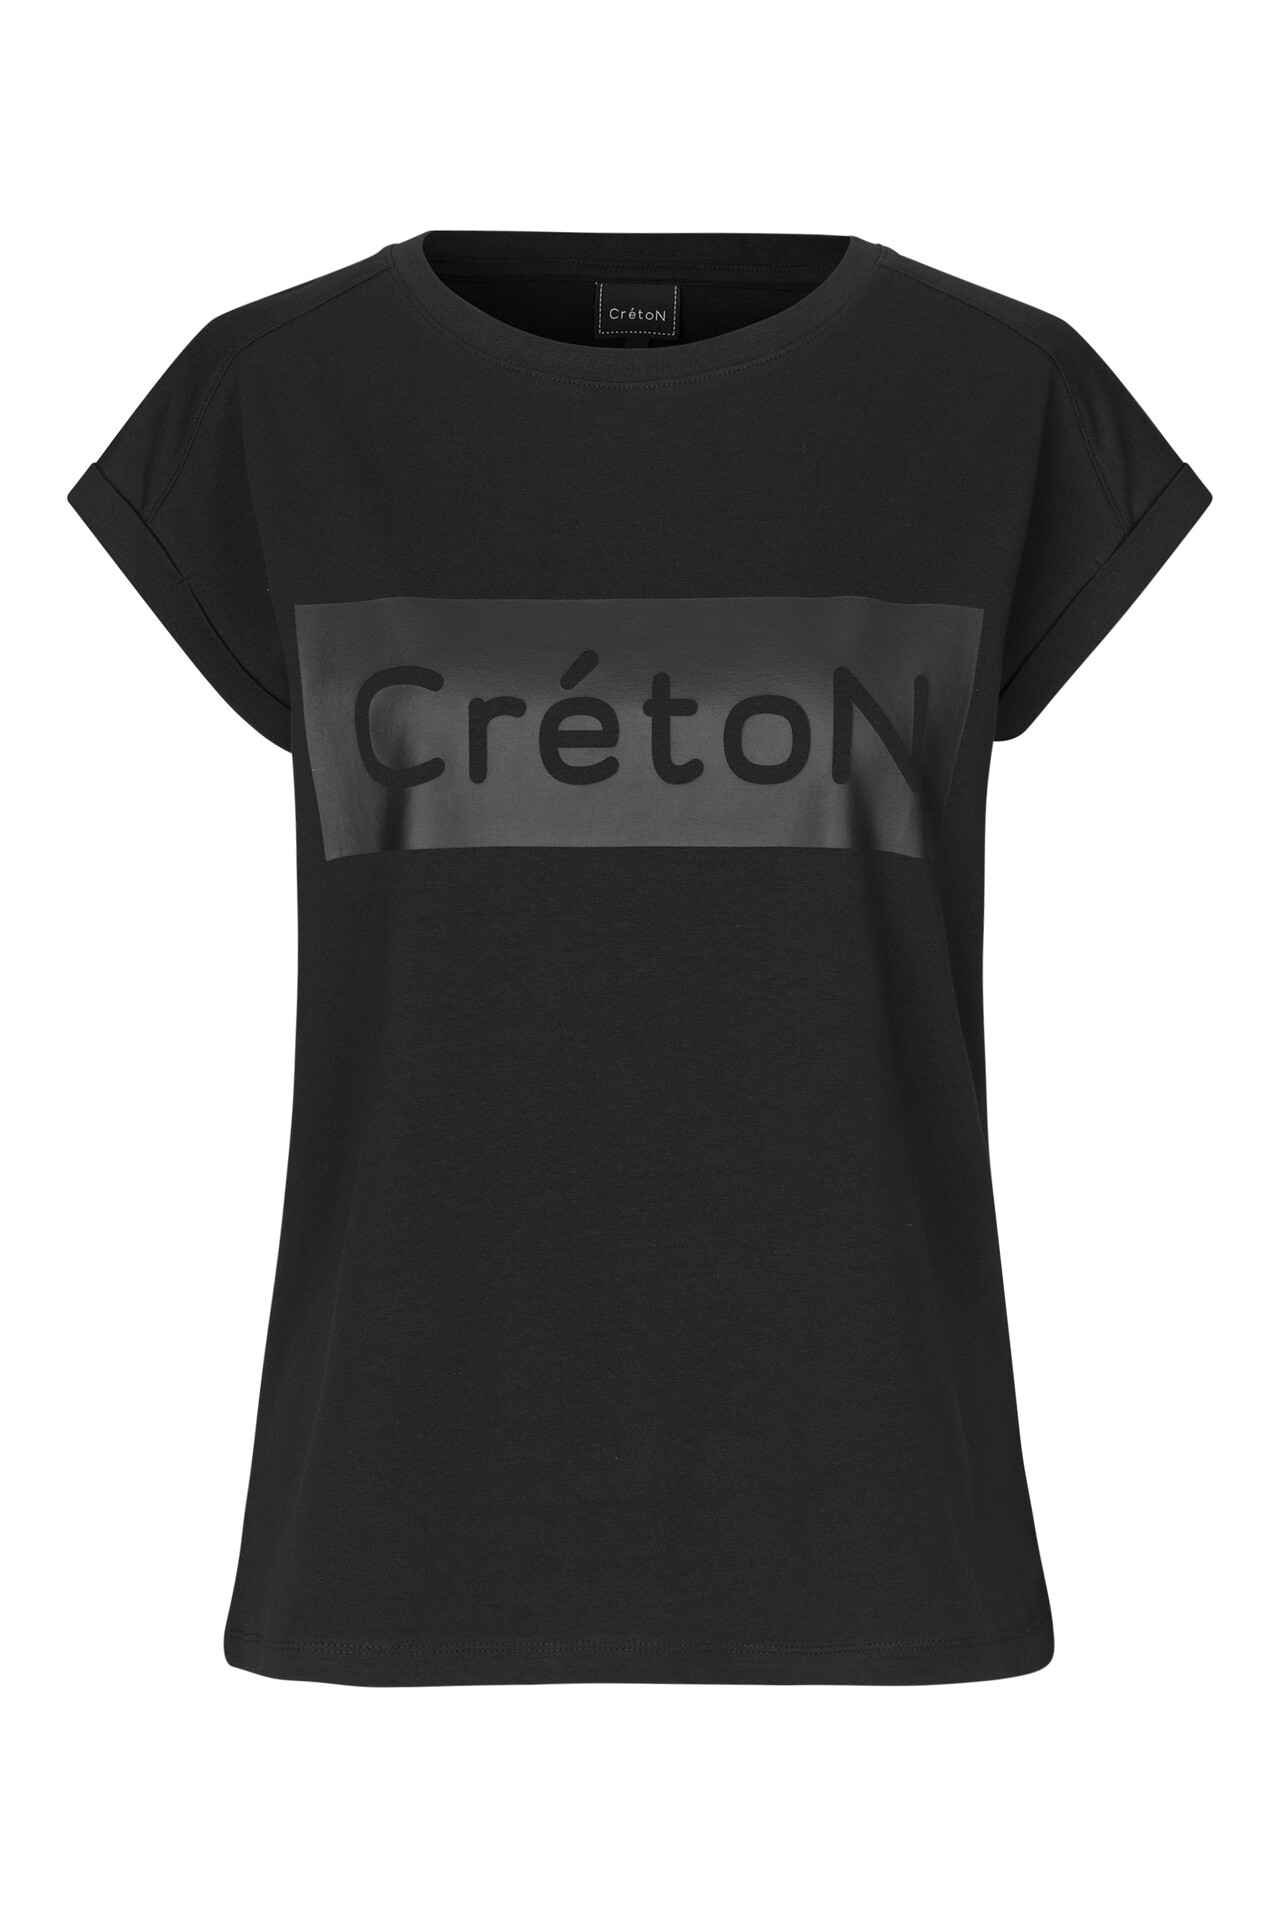 CRÉTON CRTenley C T-shirt  (SORT S)